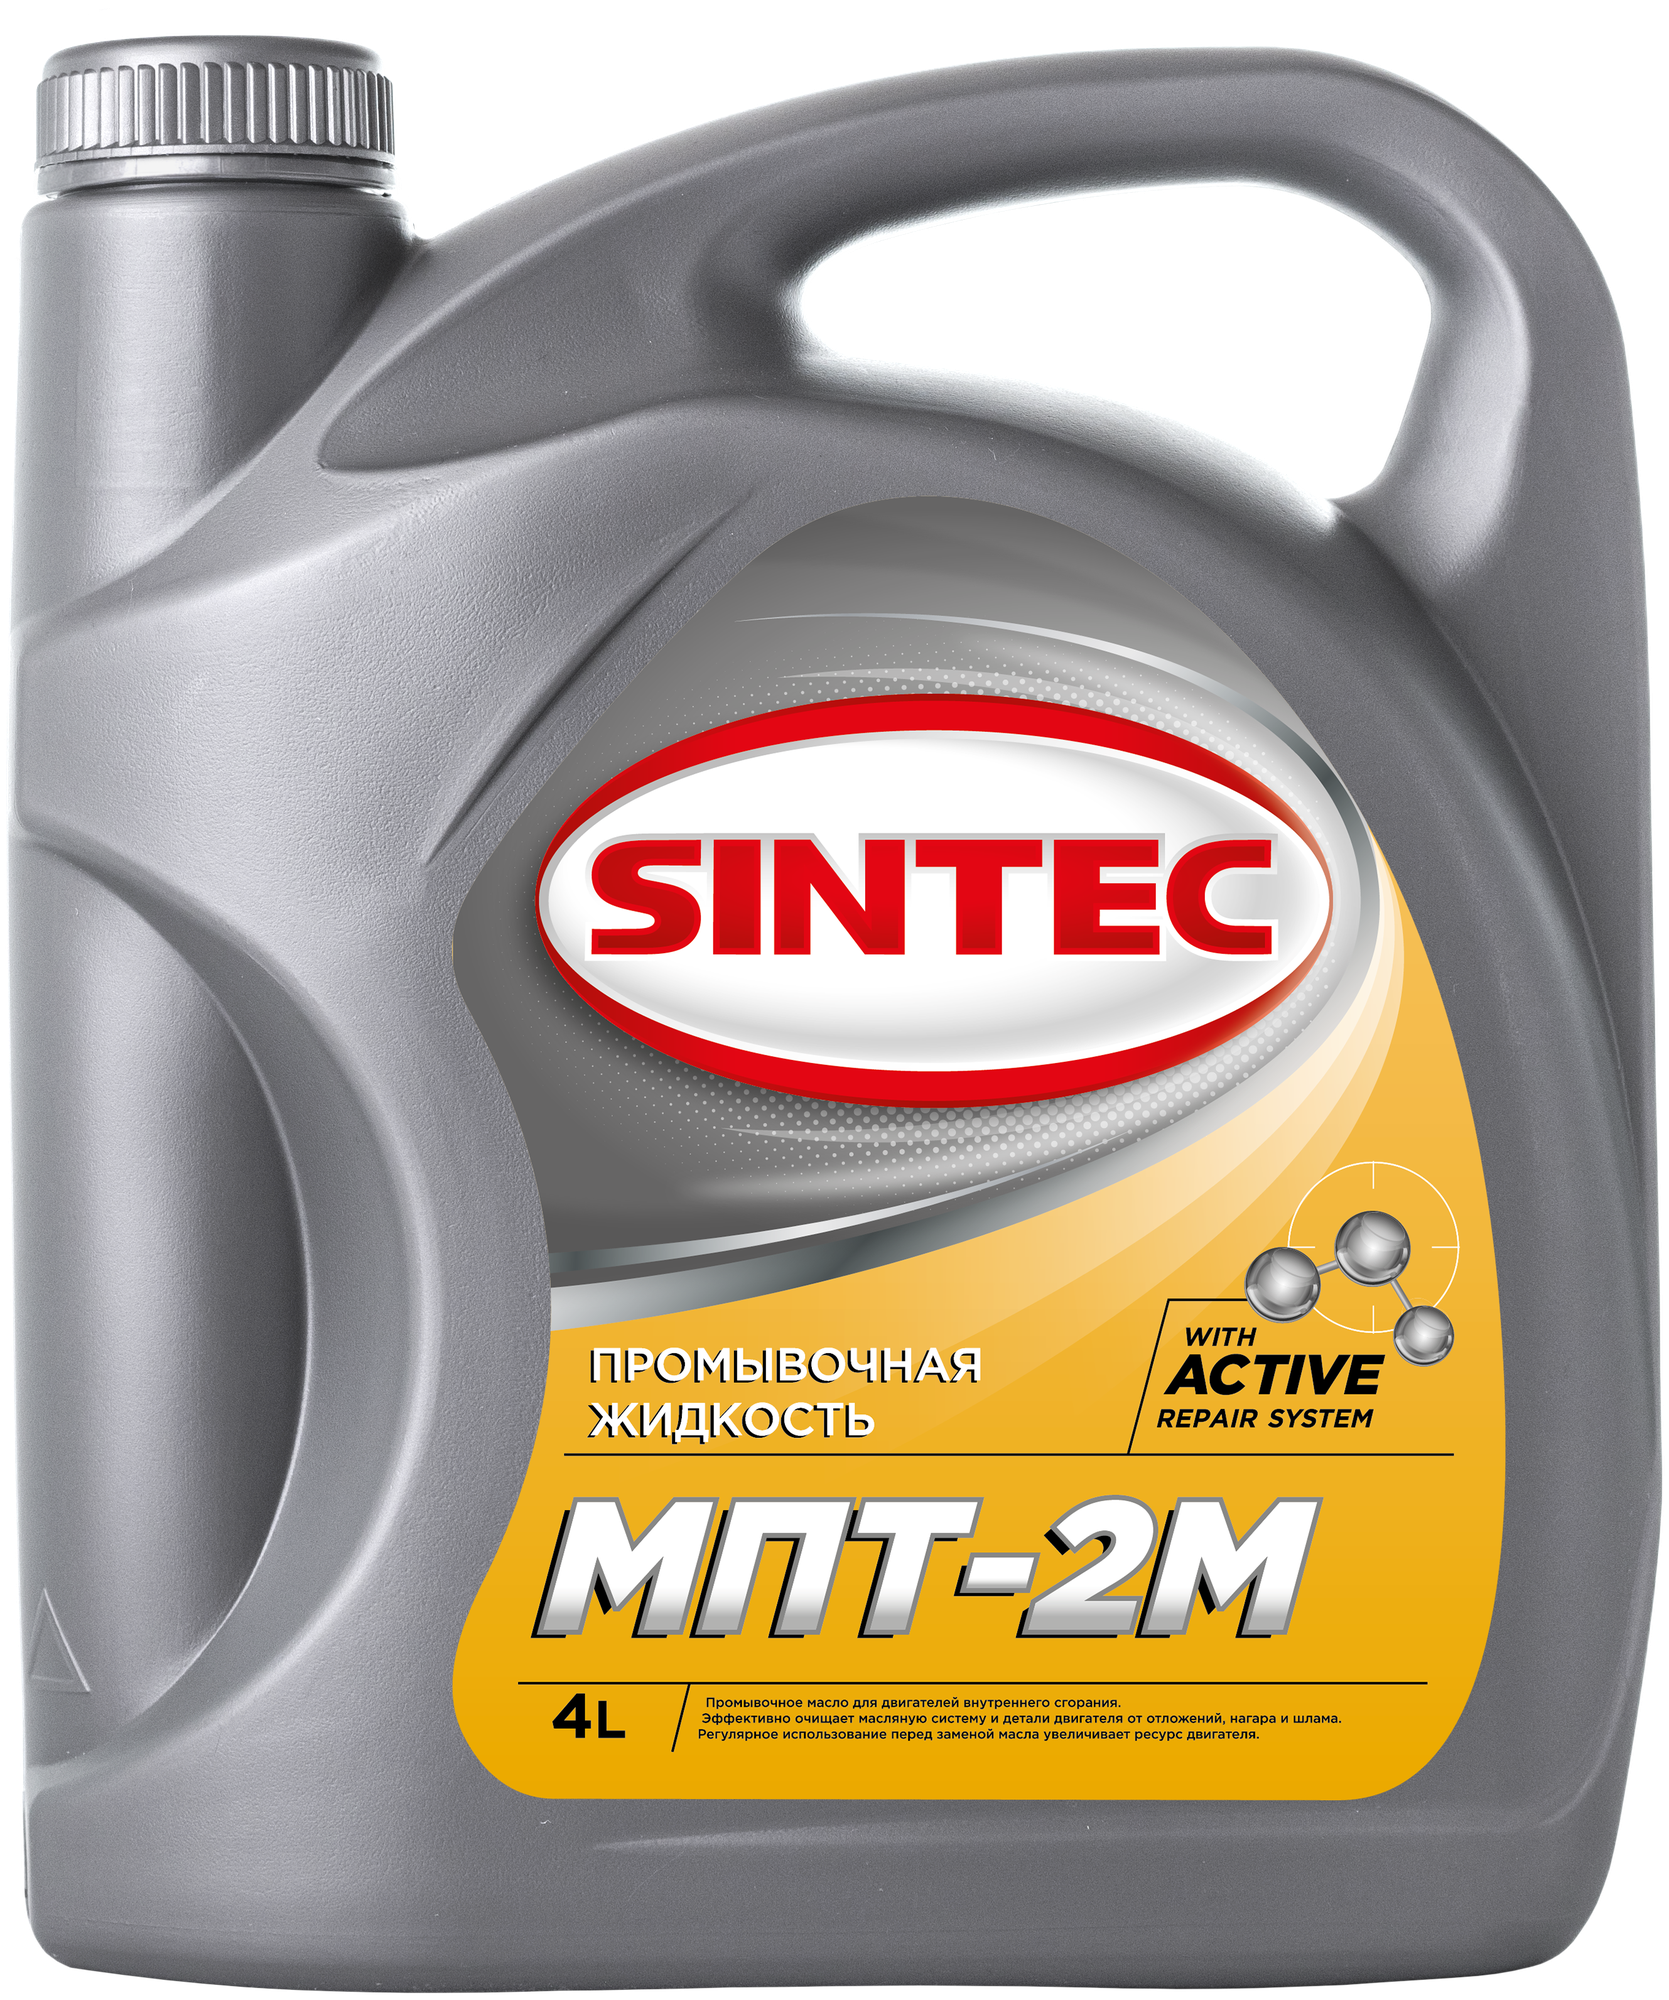 SINTEC МПТ-2М 4л SINTEC / арт. 999806 - (1 шт)